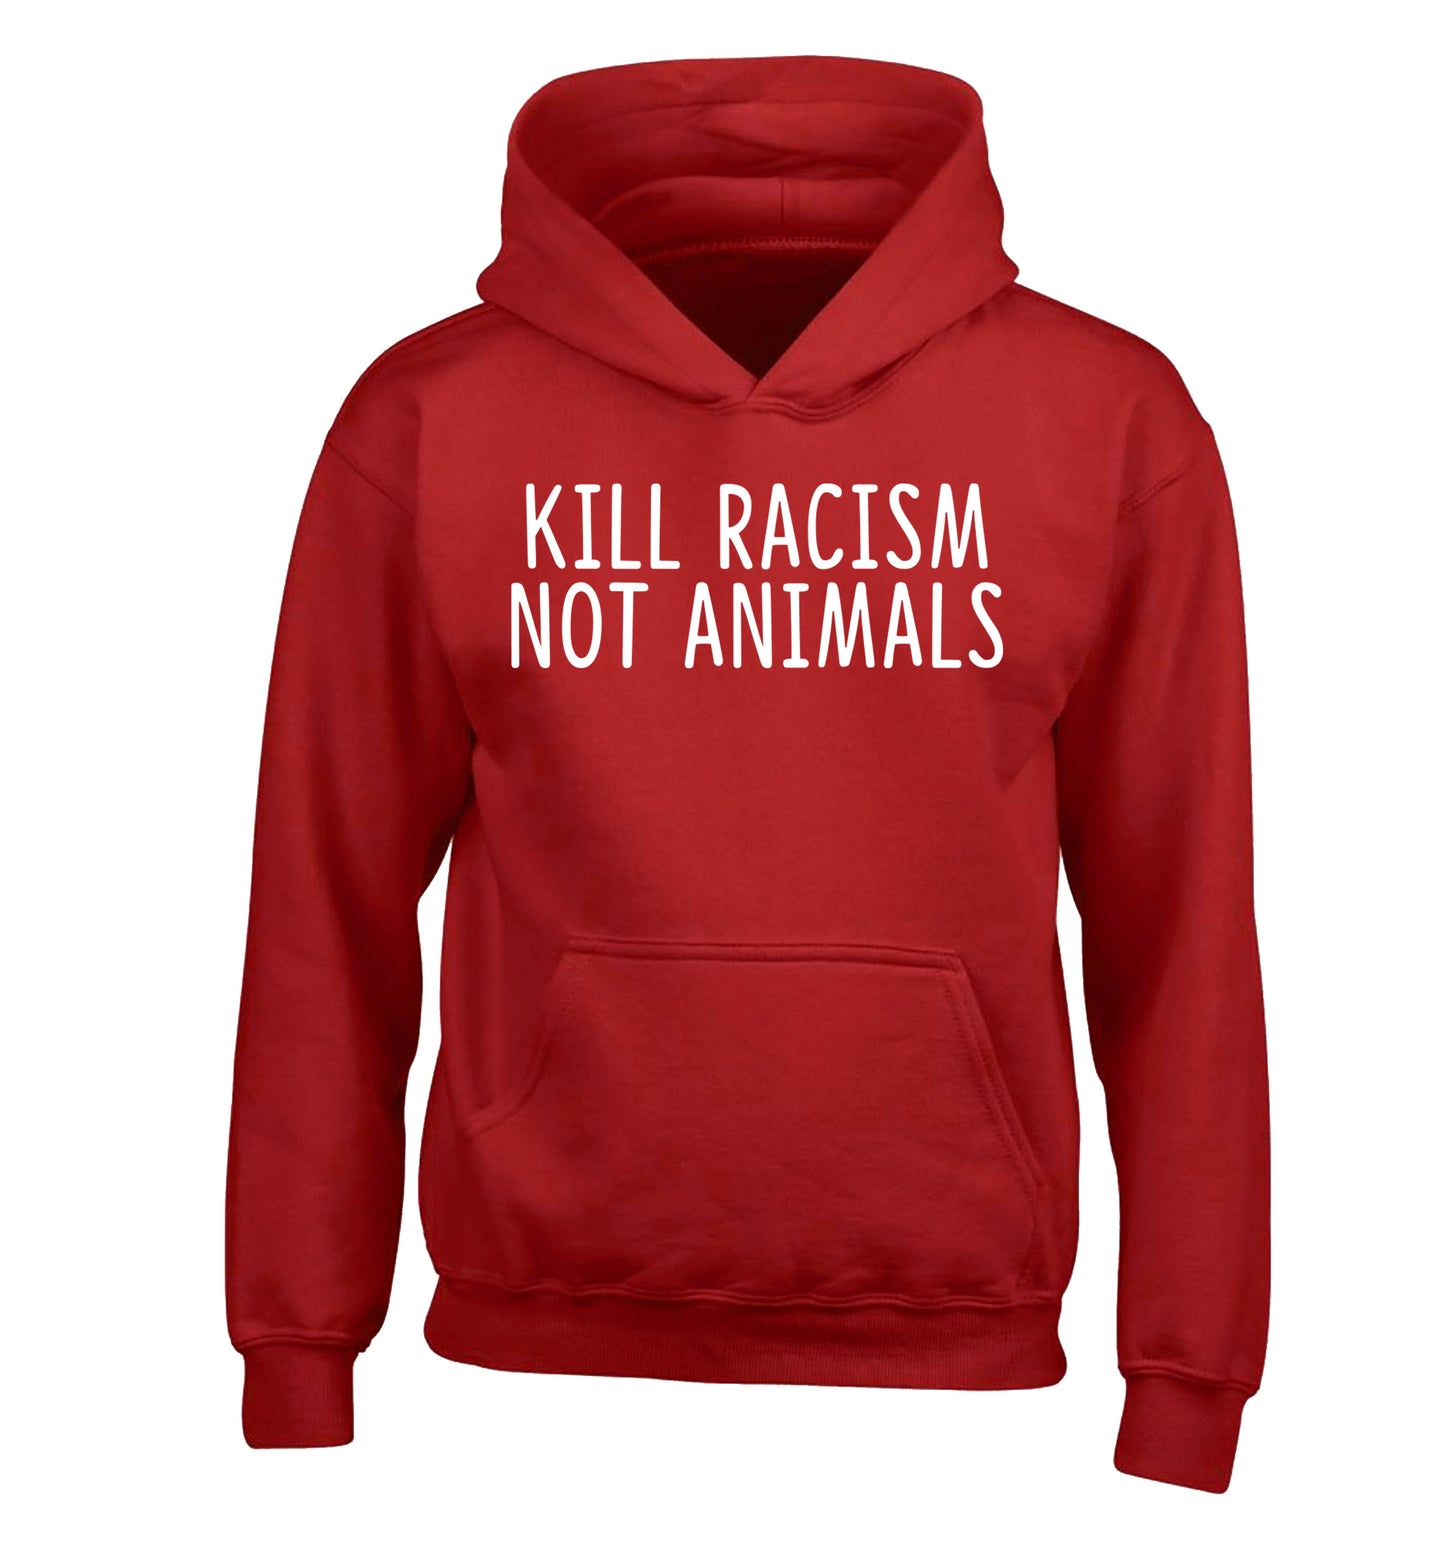 Kill Racism Not Animals children's red hoodie 12-13 Years